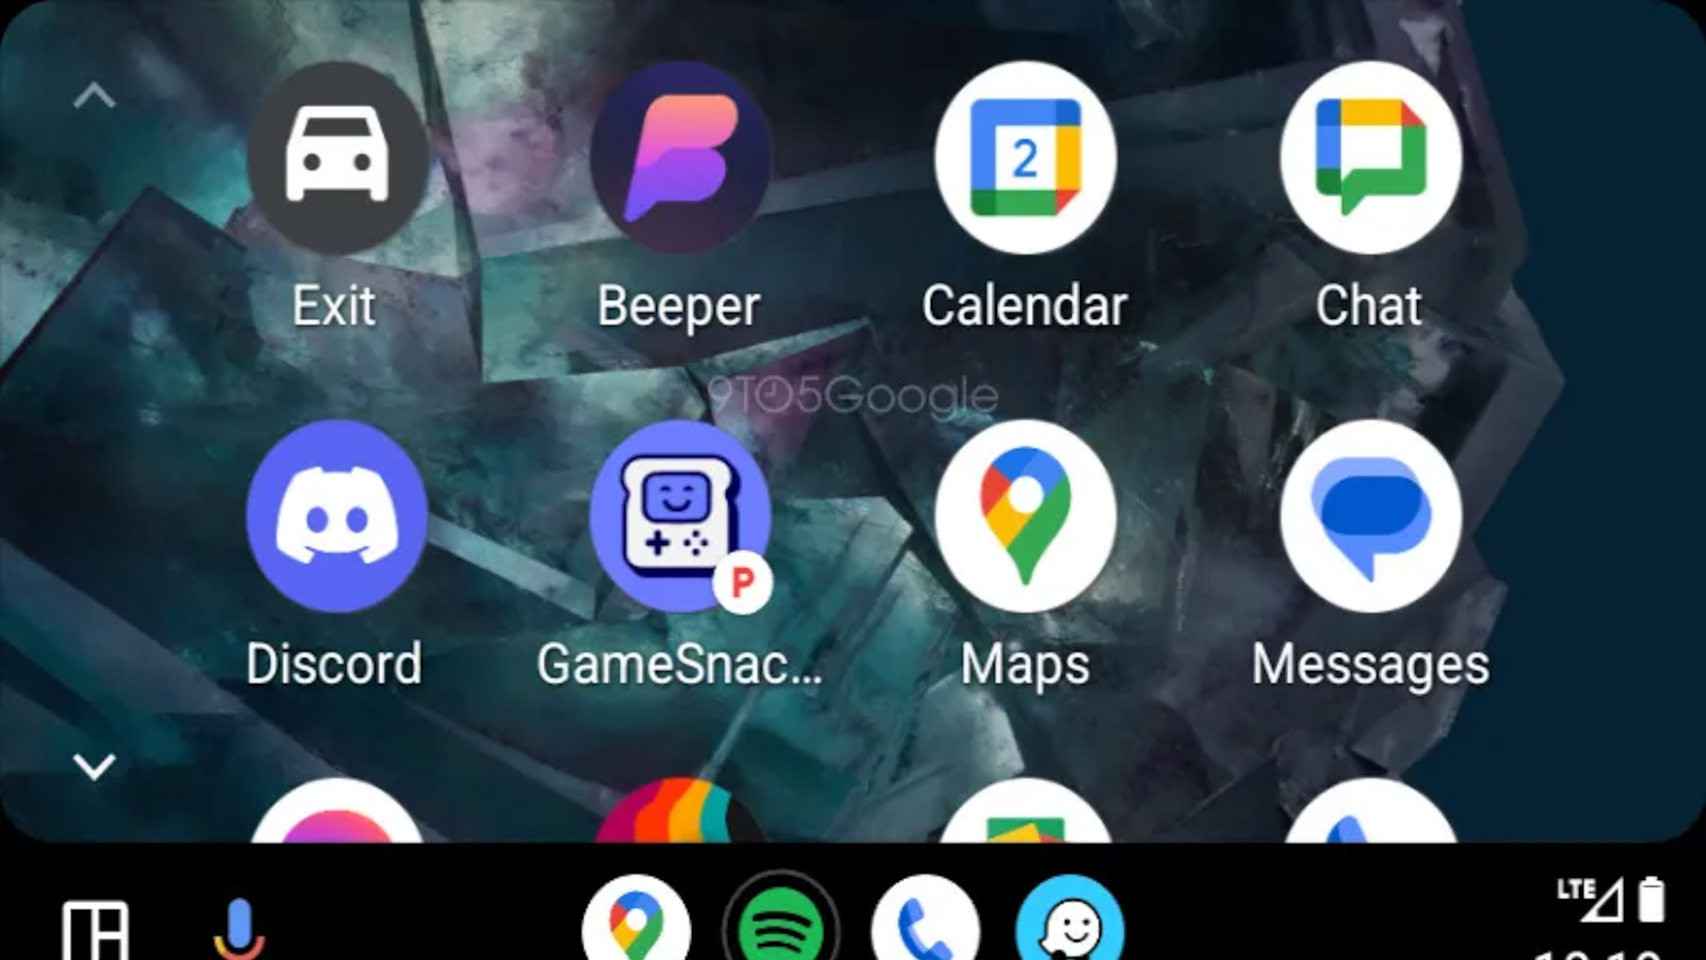 Nuevo icono en Android Auto que indica que la app sólo se puede usar con el coche aparcado